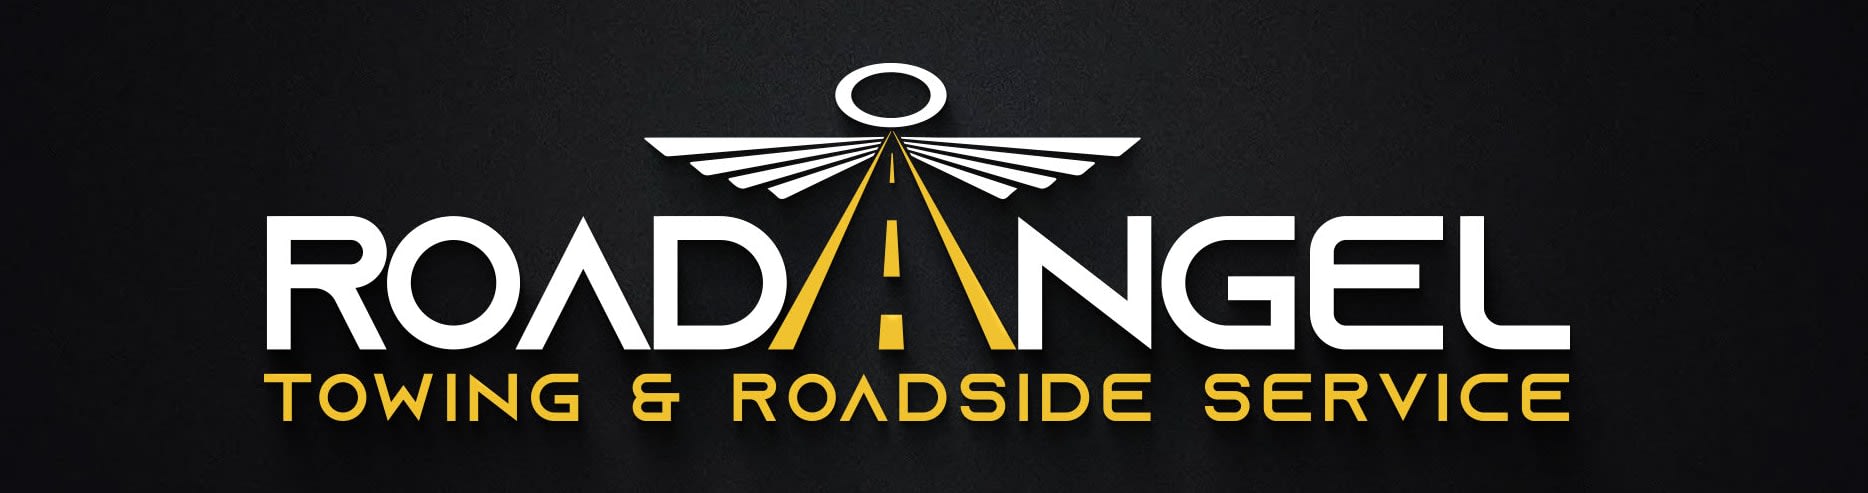 Towing & Roadside Service | RoadAngel